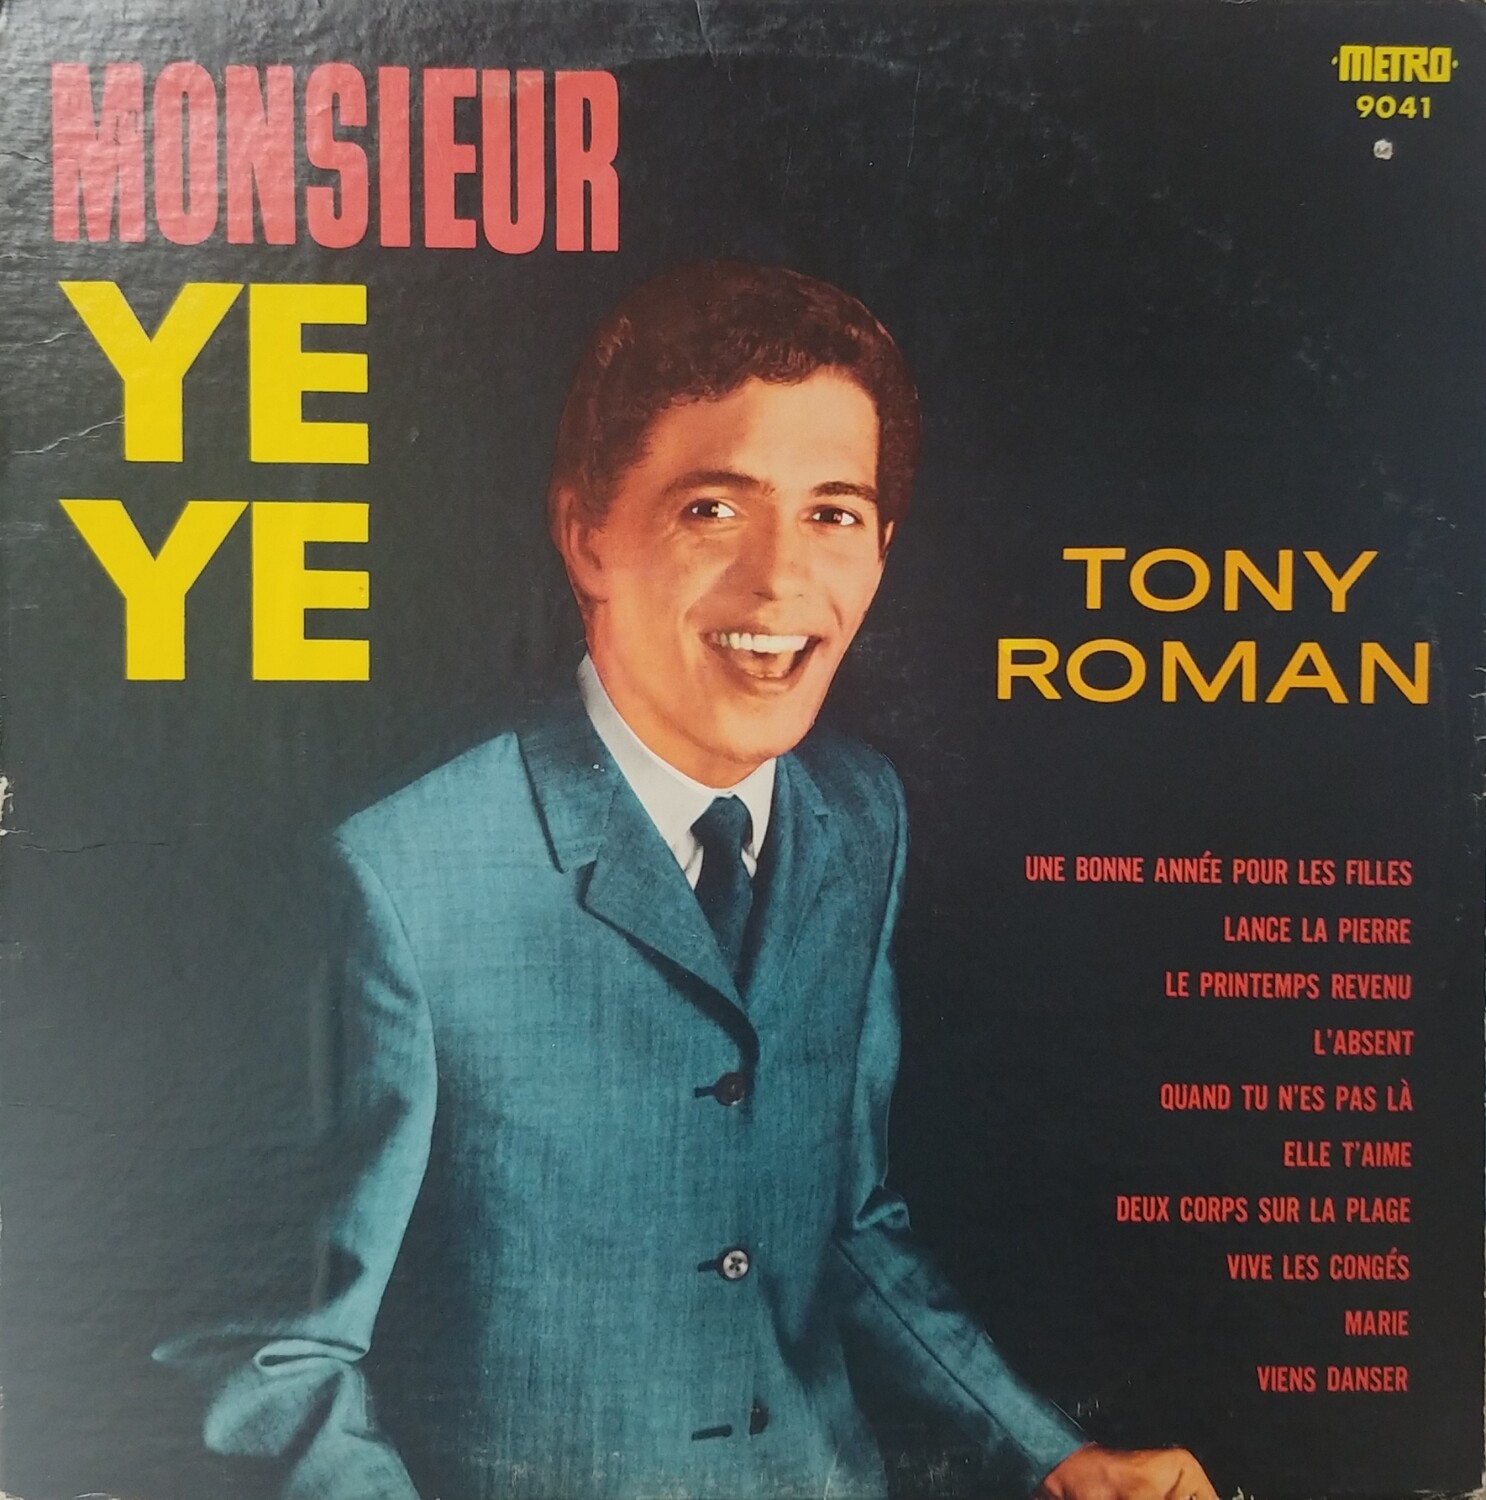 Tony Roman - Monsieur YEYE